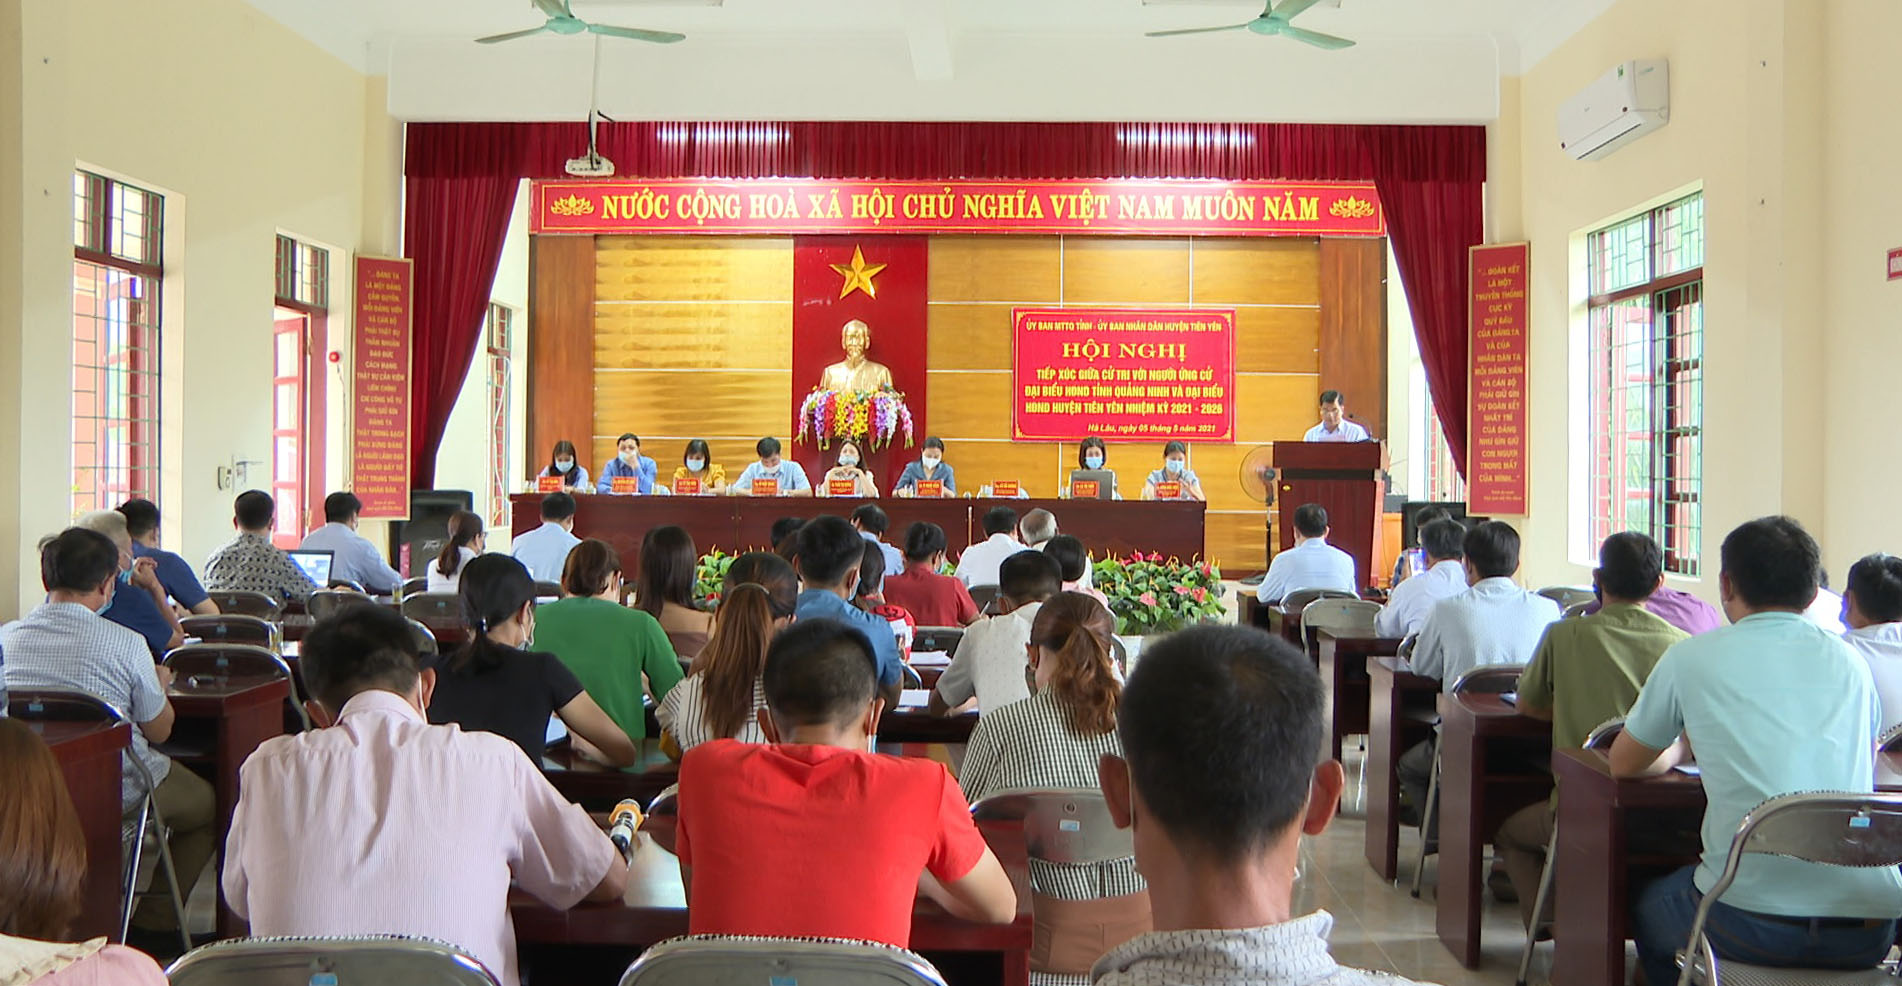 Quang cảnh buổi tiếp xúc giữa cử tri và những người ứng cử đại biểu HĐND tỉnh và huyện Tiên Yên nhiệm kỳ 2021 - 2026.